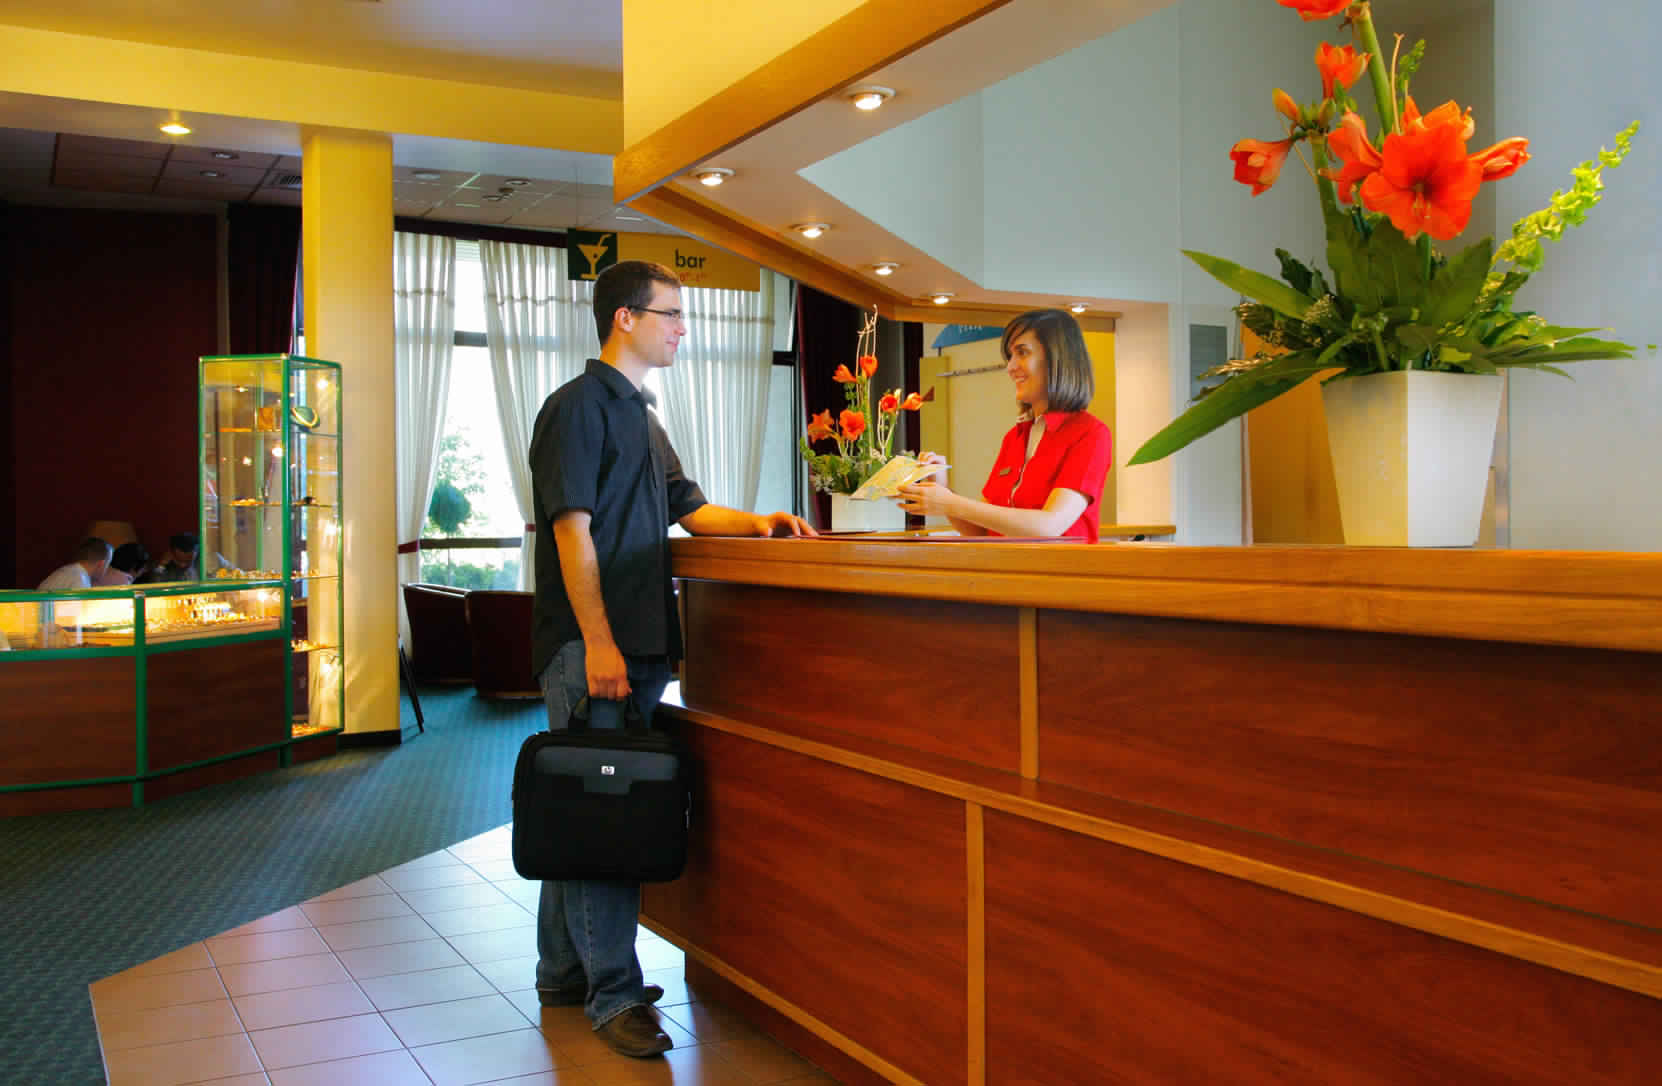 معايير و طرق اختيار الفندق المناسب عند السفر 